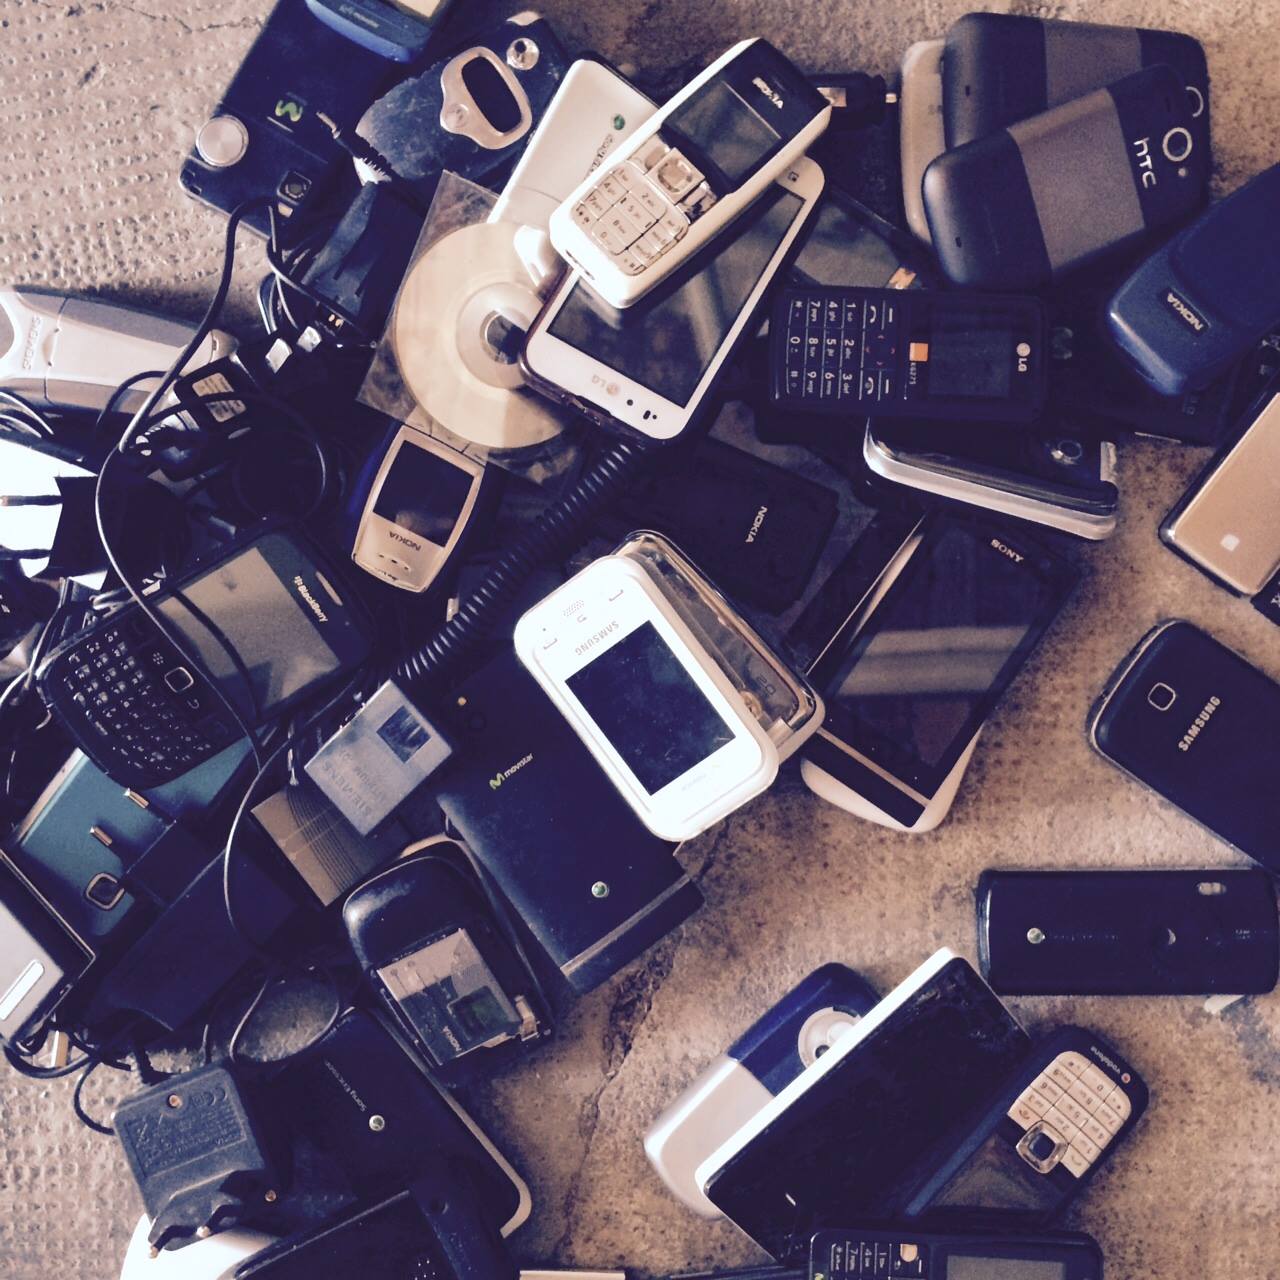 L’Agrat recollirà mòbils antics a la Fira del Medi Ambient